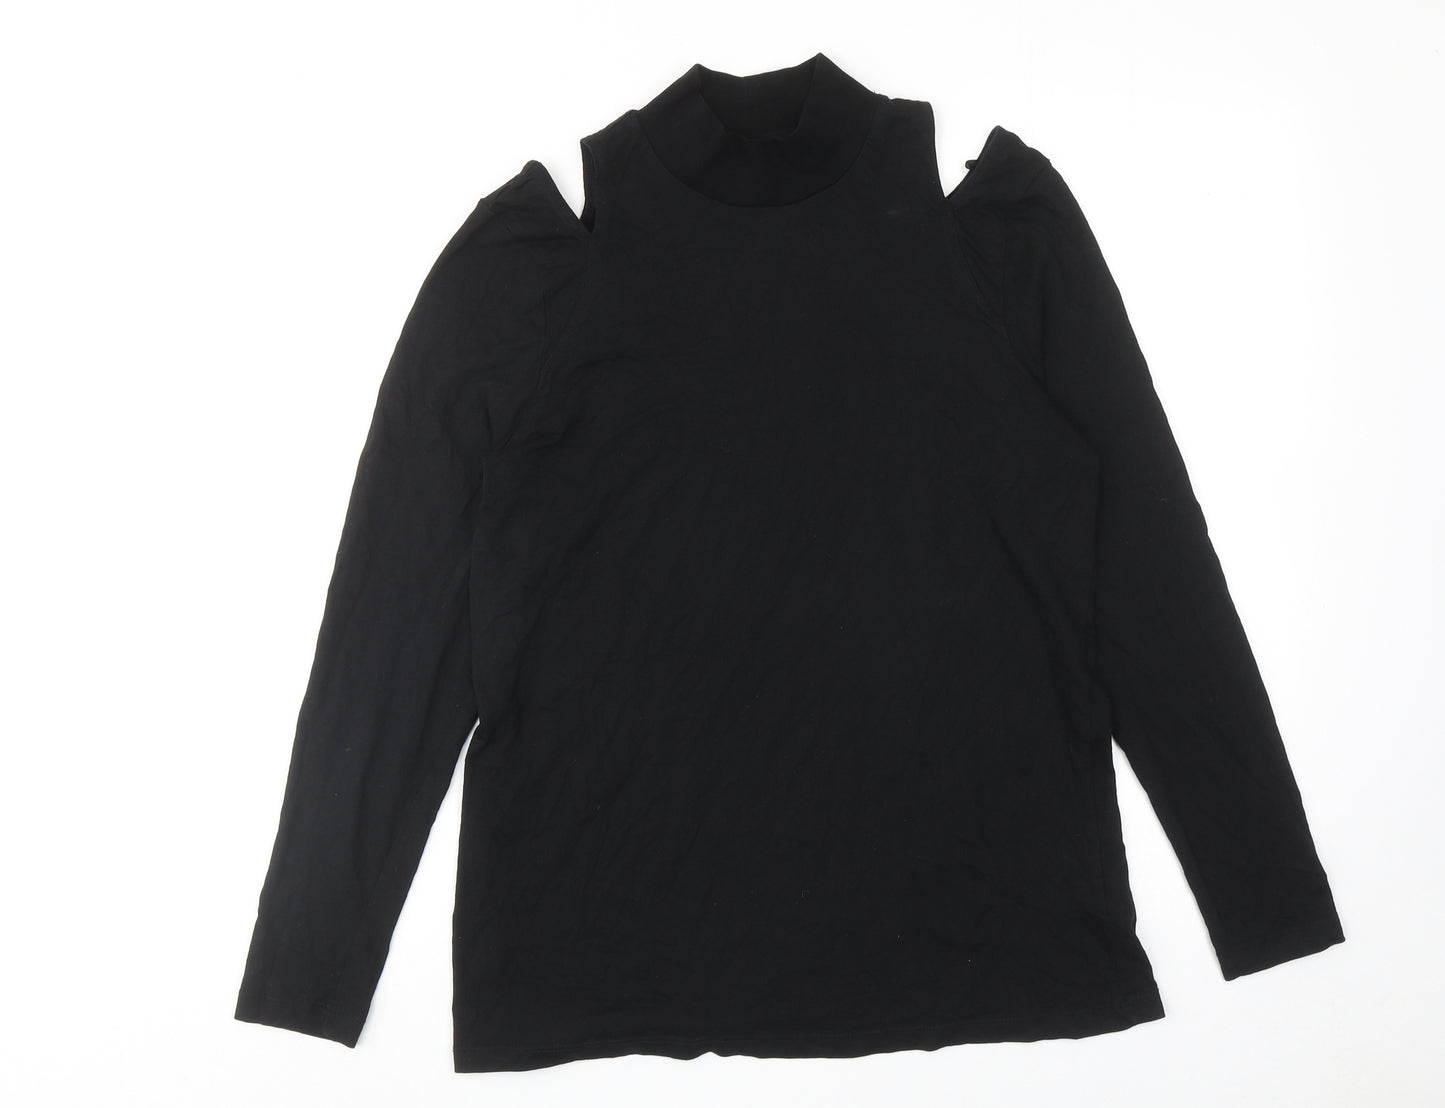 NEXT Womens Black Cotton Basic T-Shirt Size 16 Mock Neck - Cut Out Shoulder